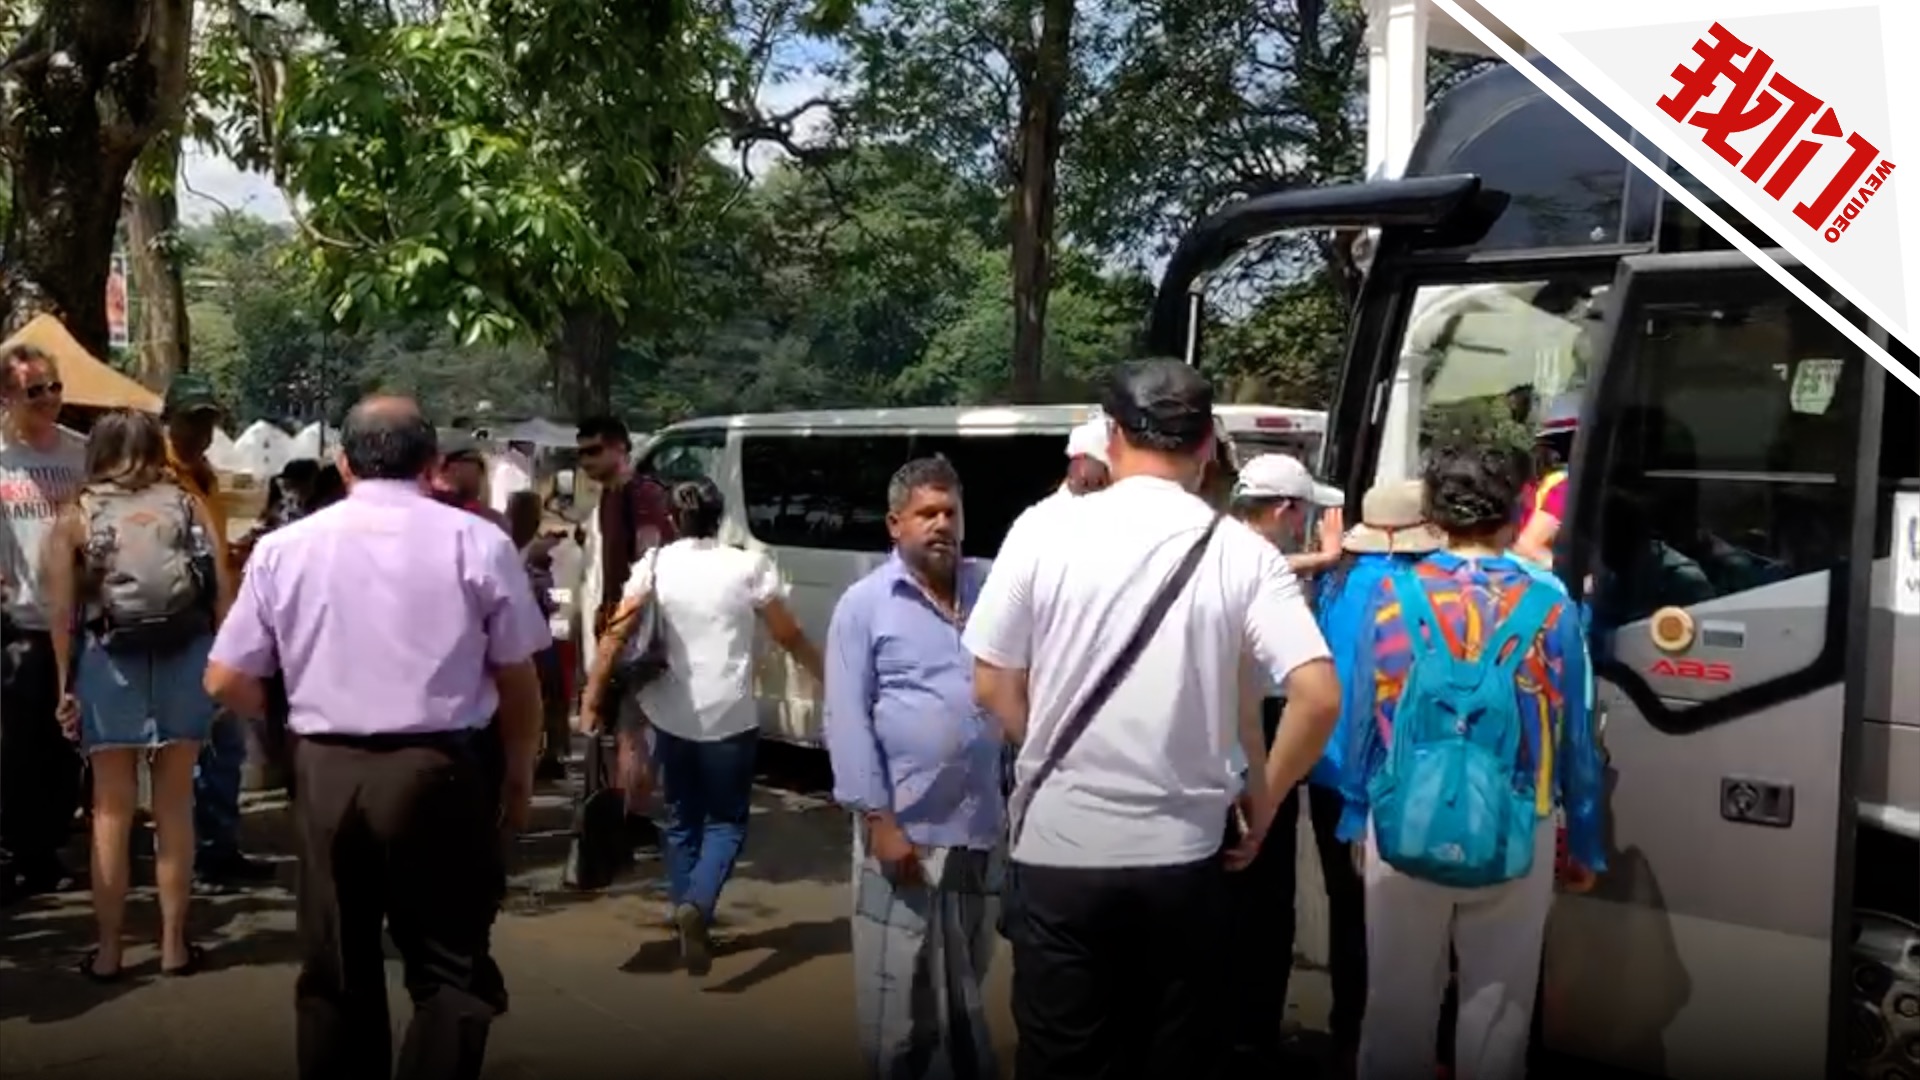 中国旅行团仍在斯里兰卡旅游 领队:会格外注意